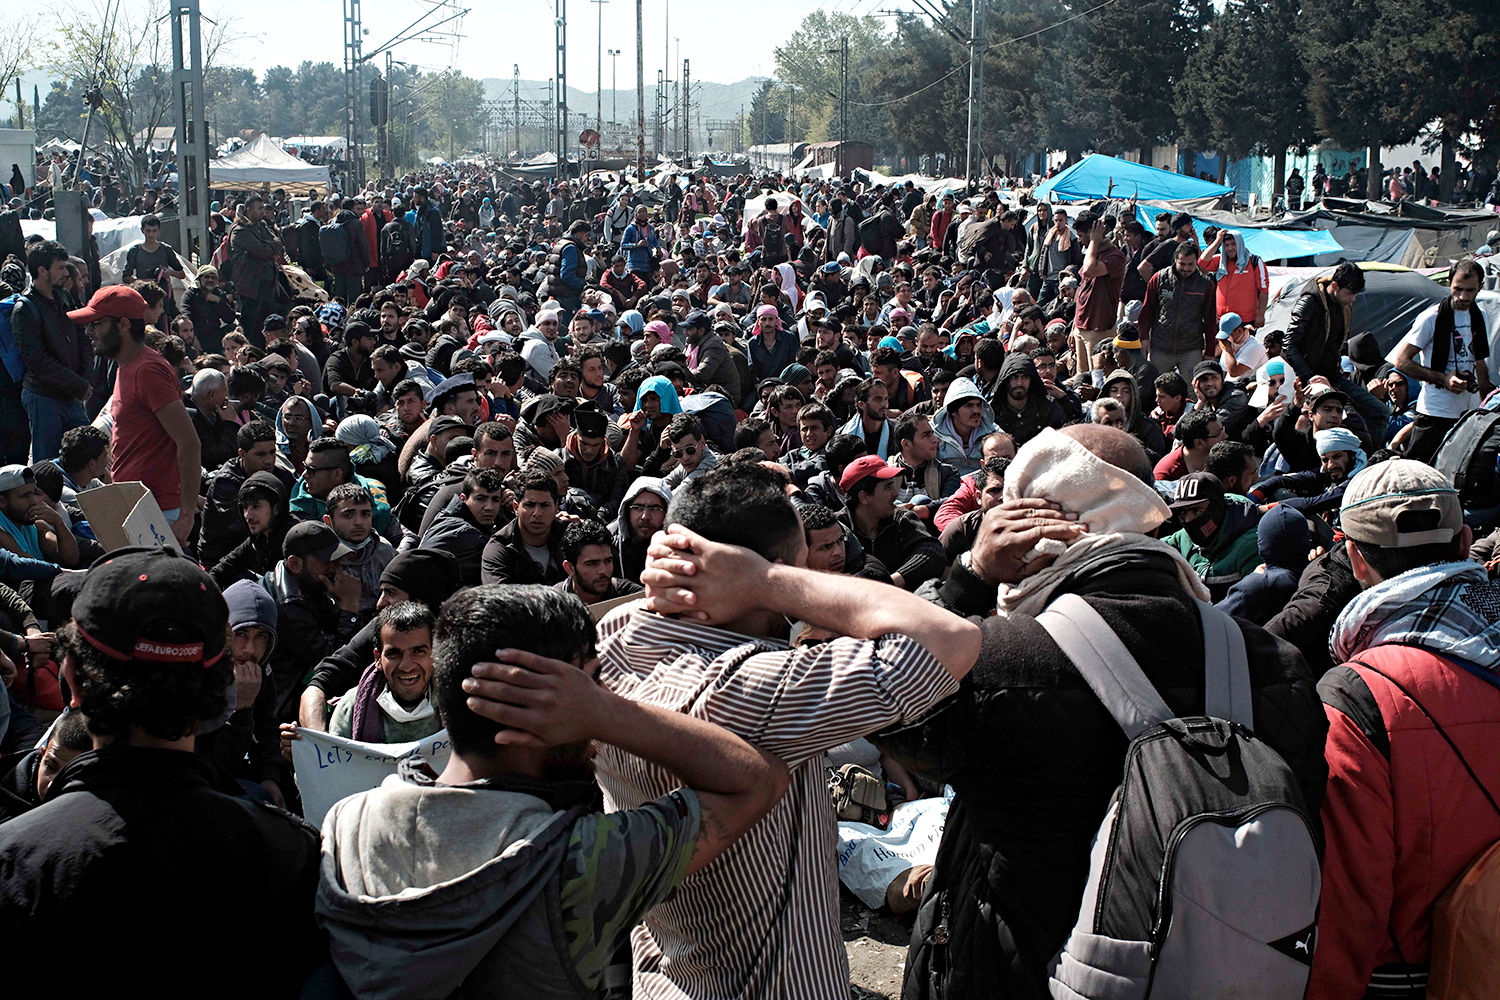 La manifestació dels refugiats va ser reprimida amb gasos lacrimògens per l’exèrcit macedoni